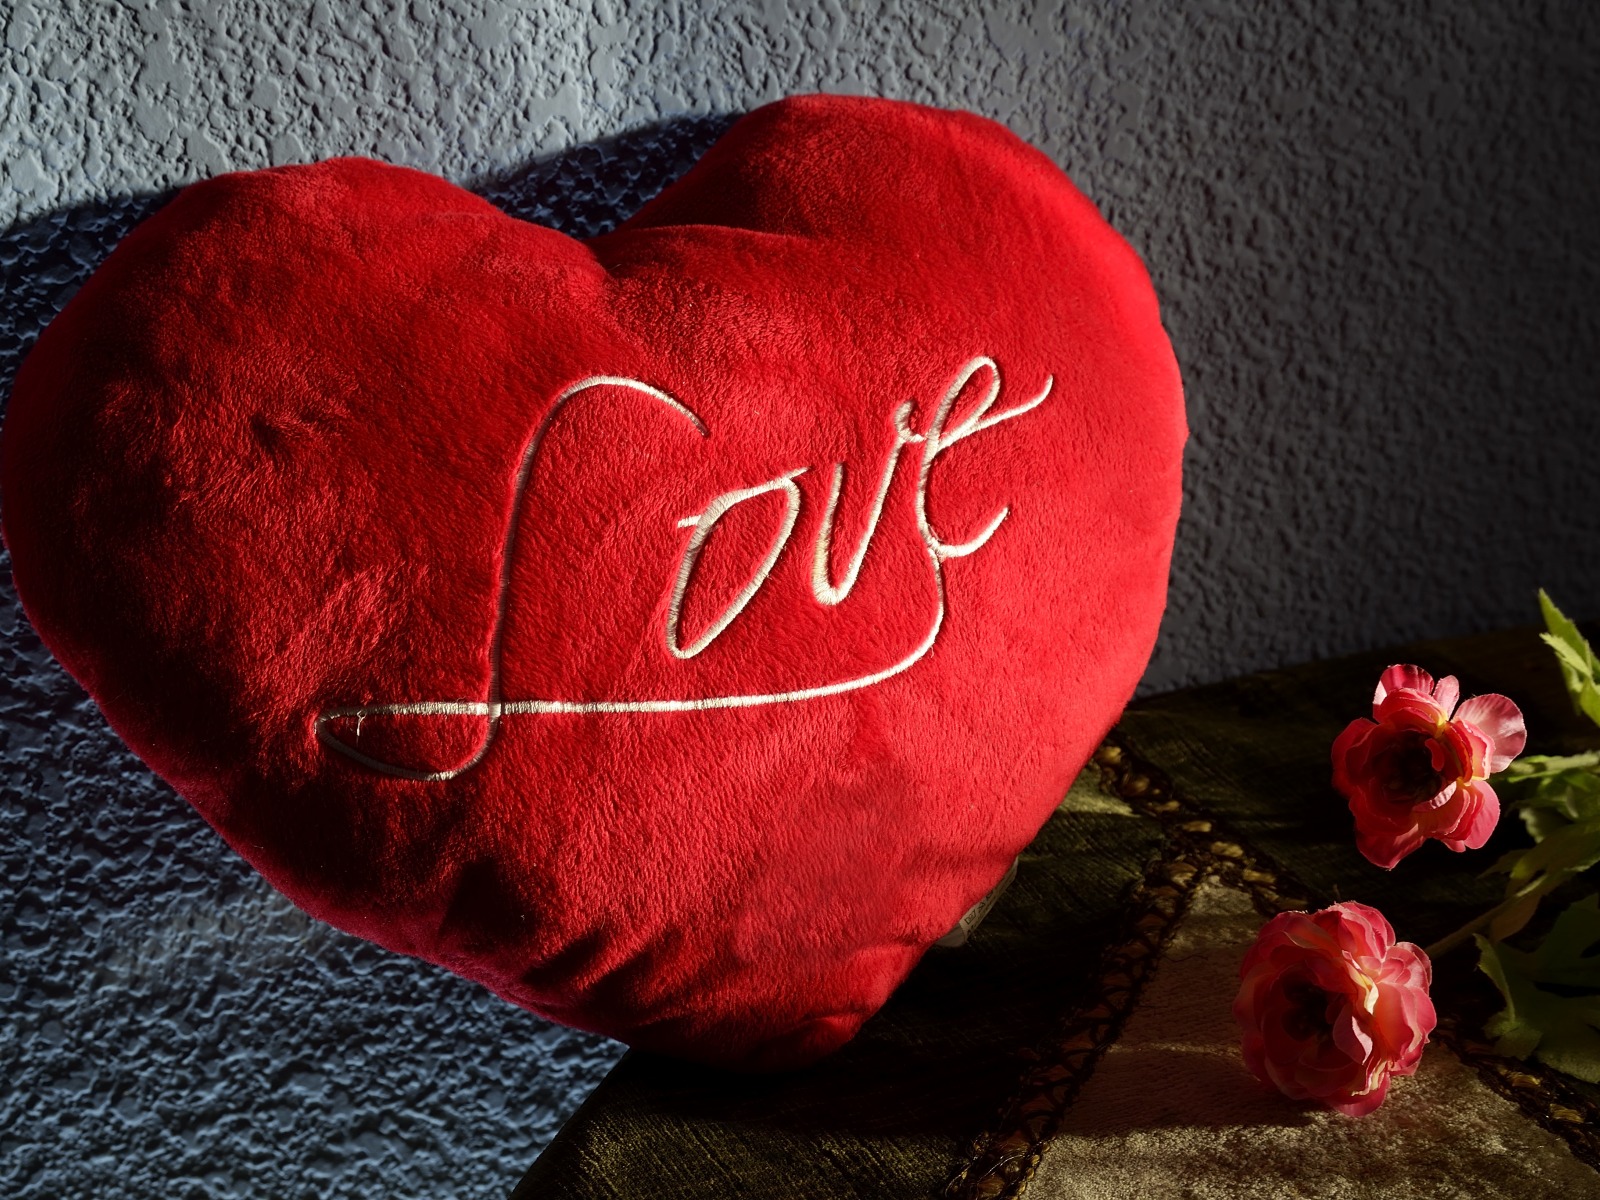 كلمة love علي قلب أحمر كبير